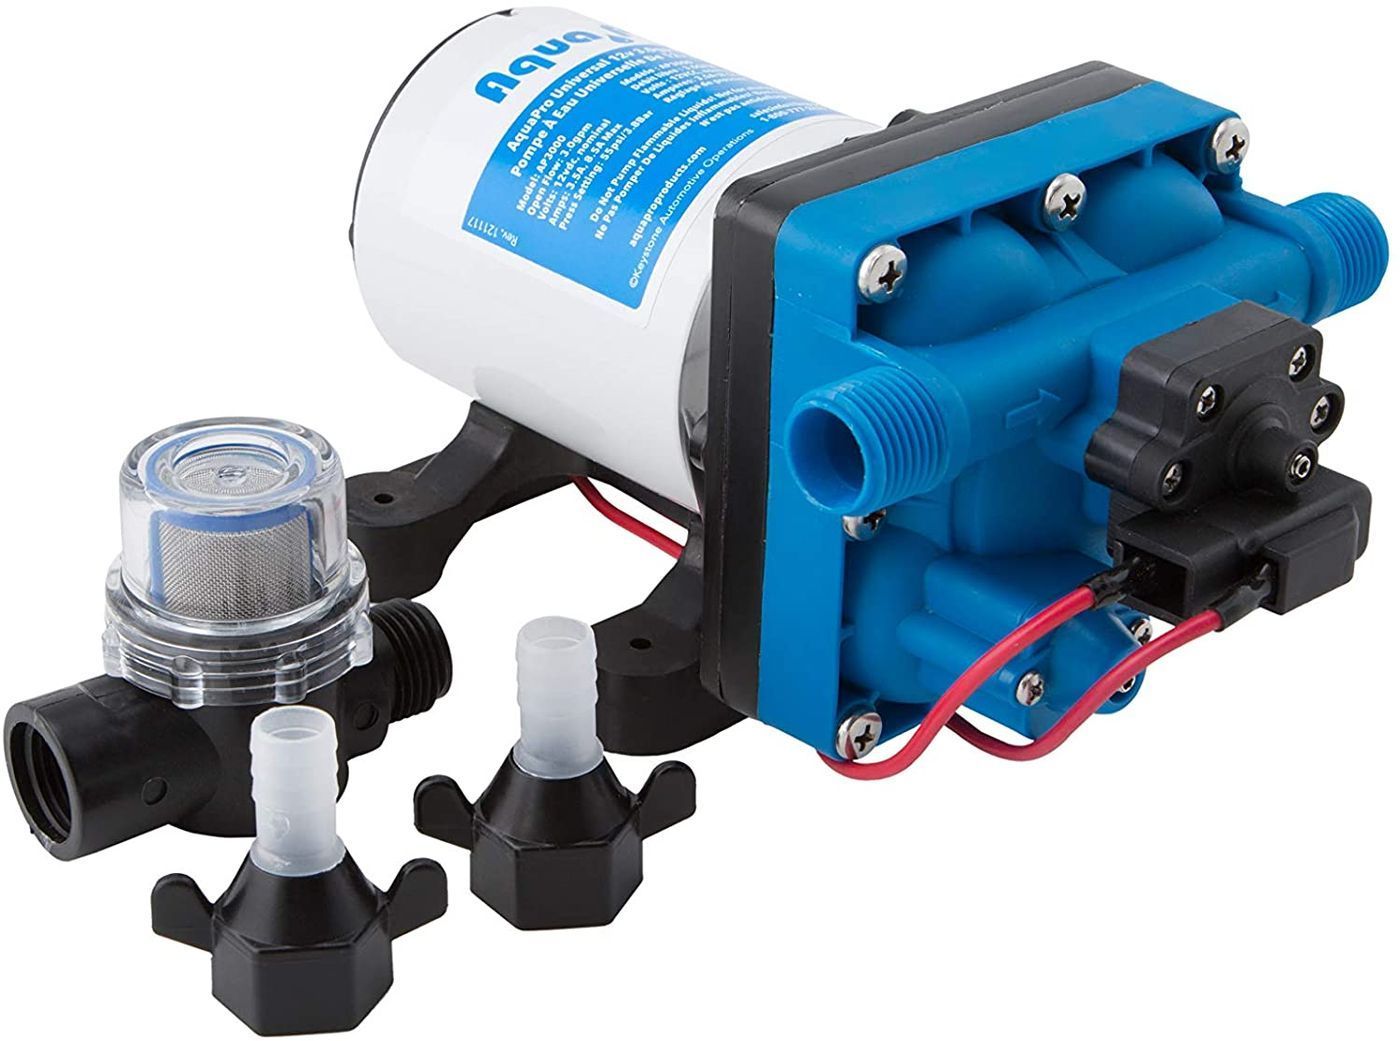 Aqua Pro 3.0 water pump